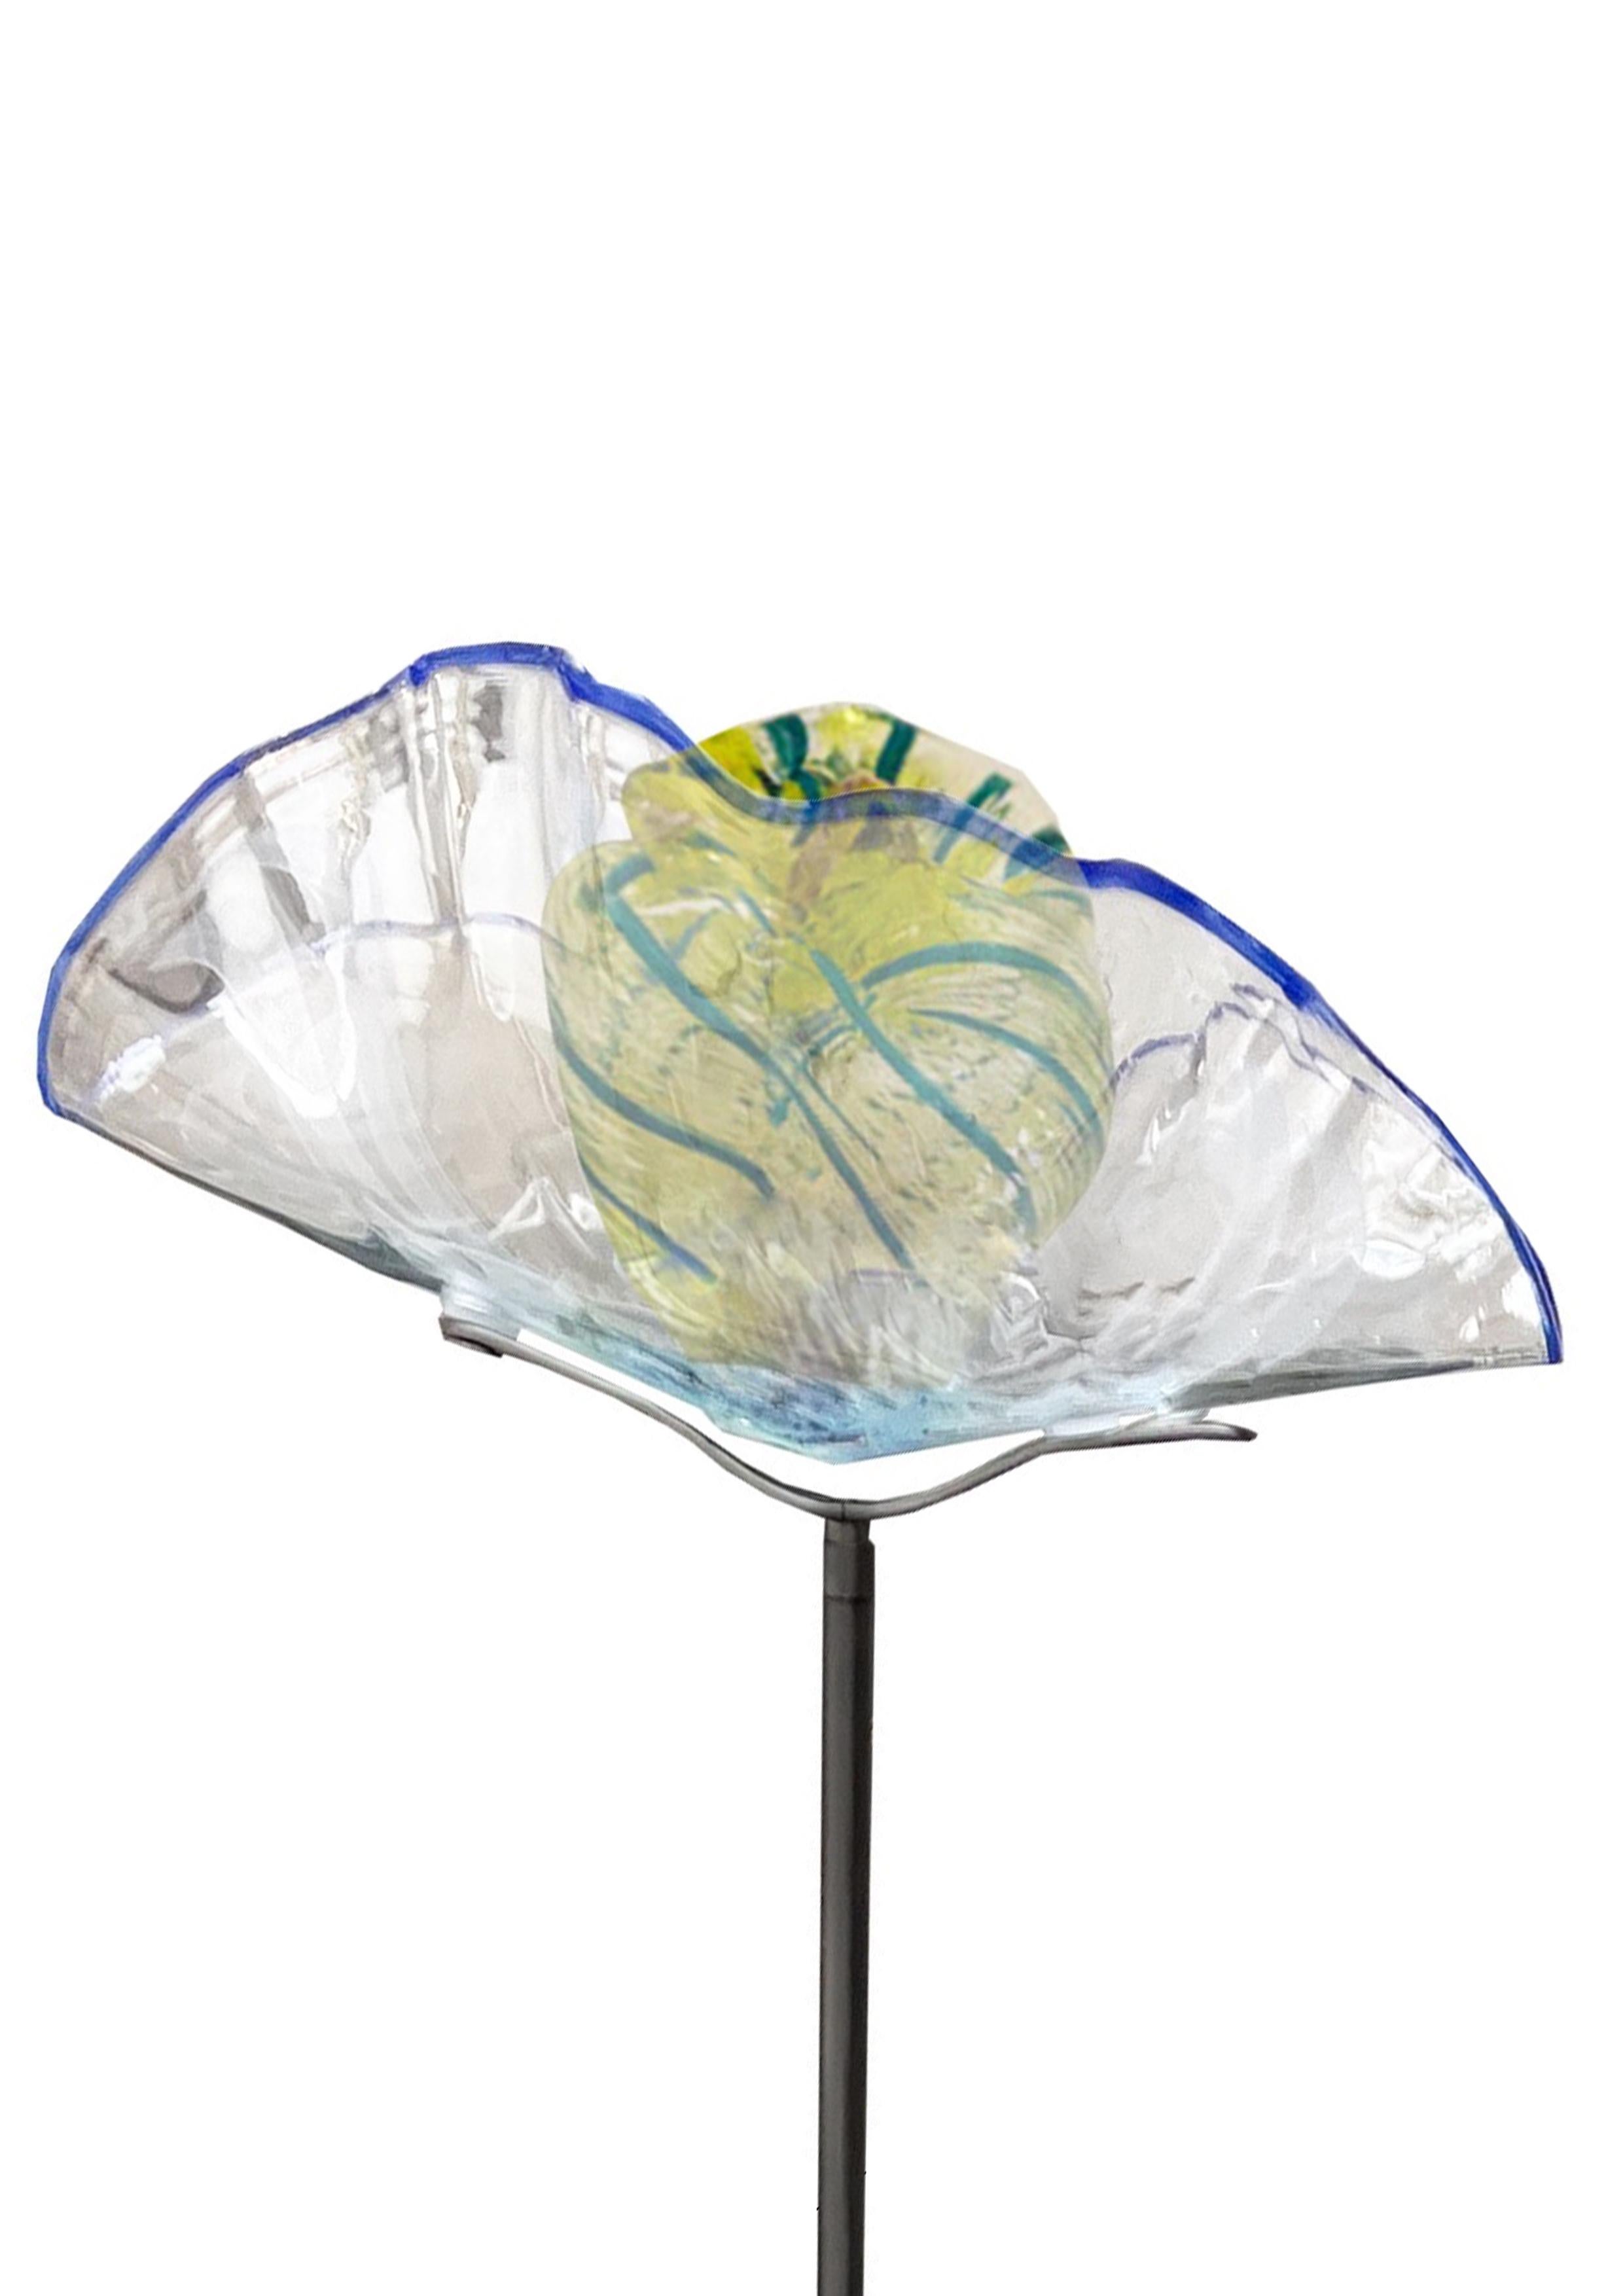 Modern Zigzag Collection, Pendant Lamp by Sema Topaloglu